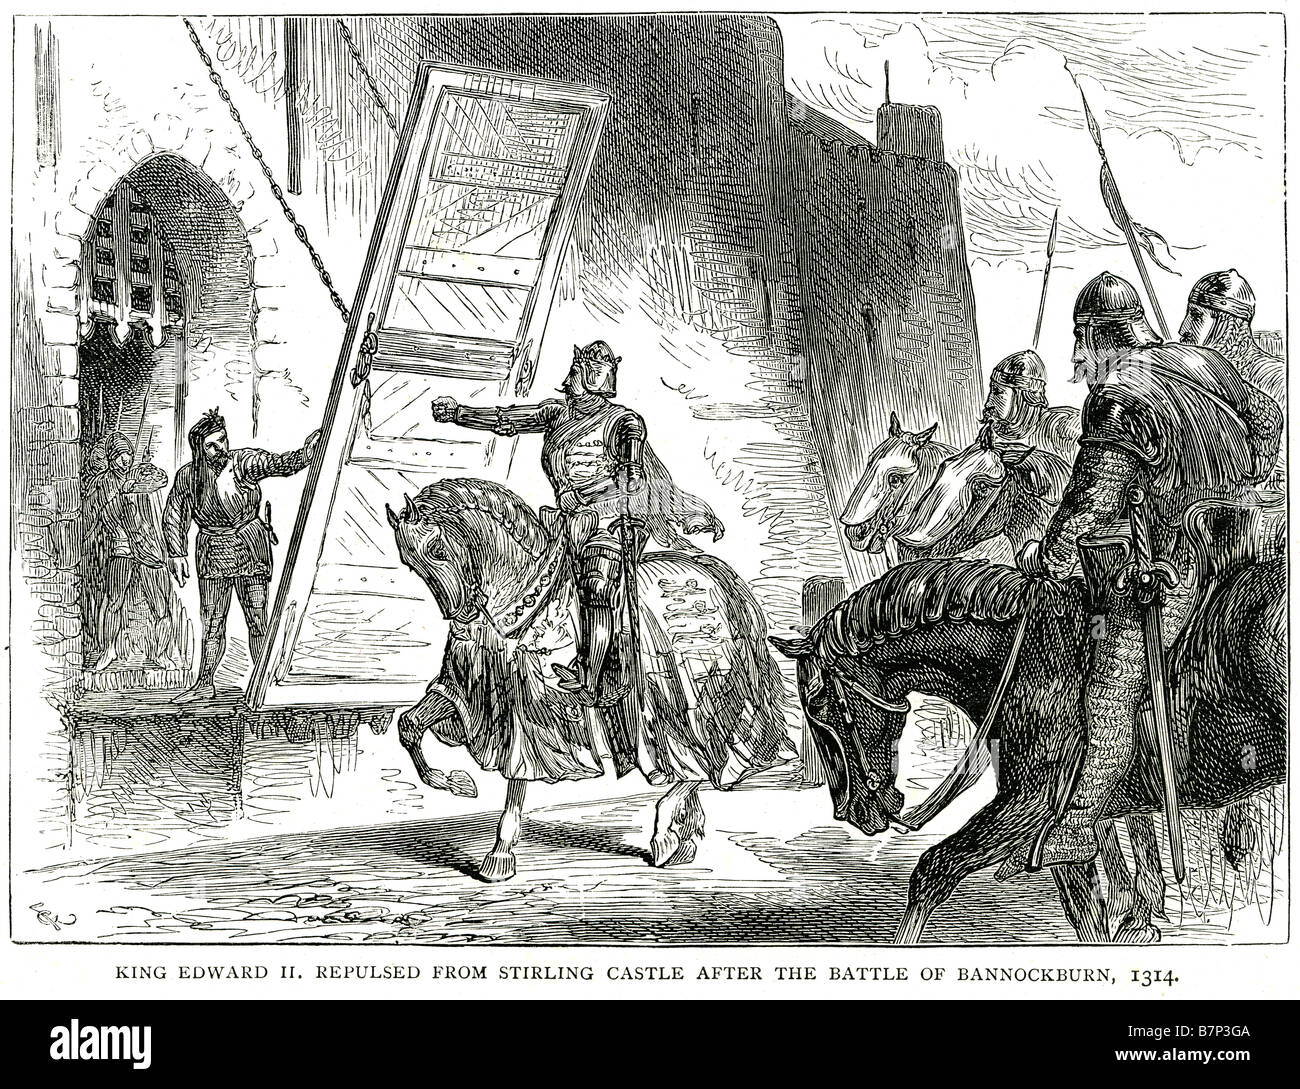 Il re Edoardo respinto dal castello di Stirling battaglia bannockburn 1314 esercito di gate è stato soldato lancia spada royalty royal horse corazza S Foto Stock